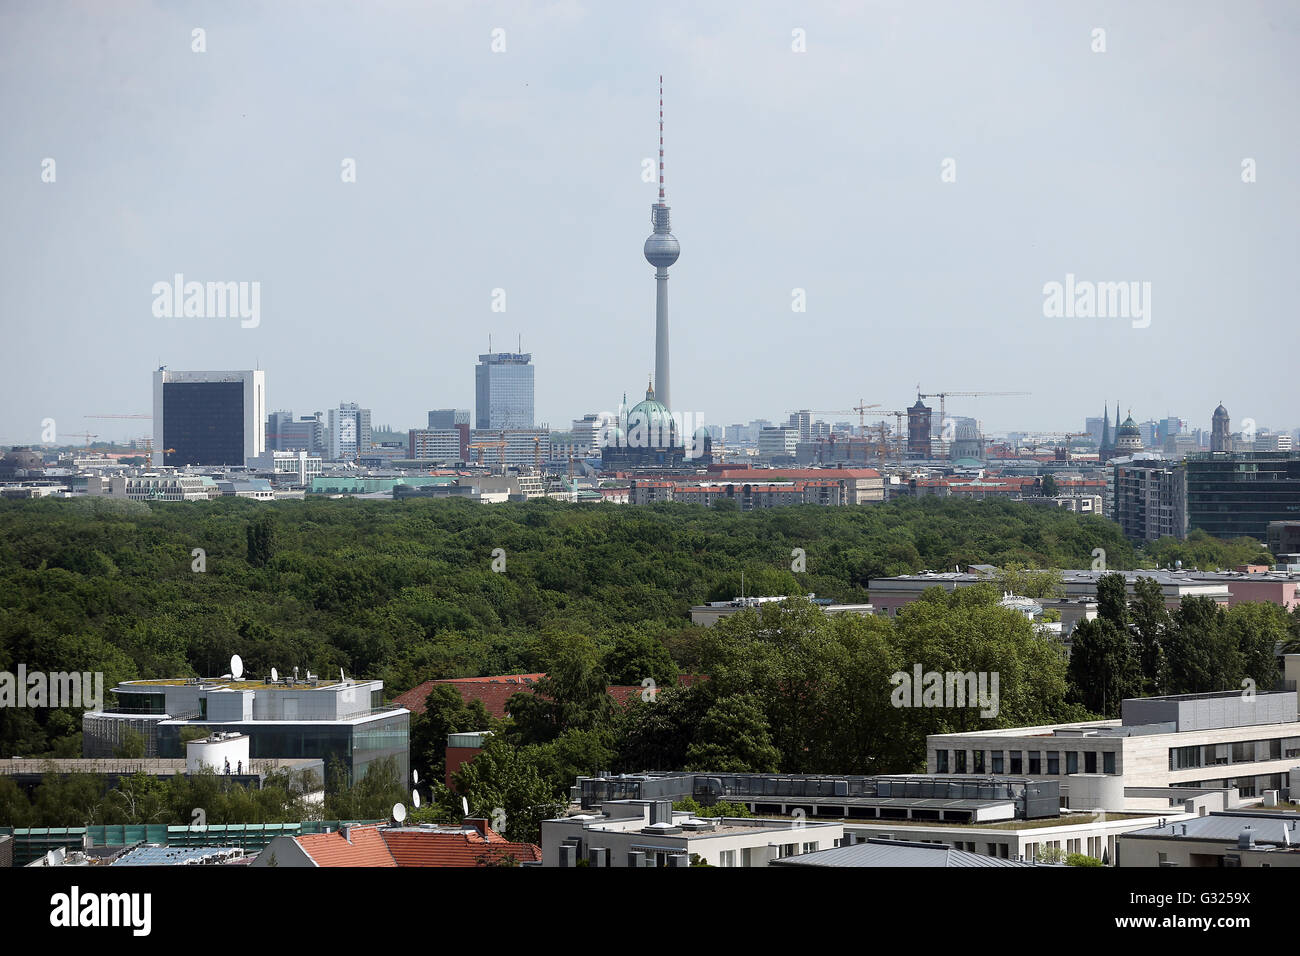 Avis de l'hôtel Interconti le 19 mai 2016 sur les toits de Berlin City-West au centre de la ville avec la tour de télévision de l'Alexanderplatz. Photo : Wolfgang Kumm/dpa Banque D'Images